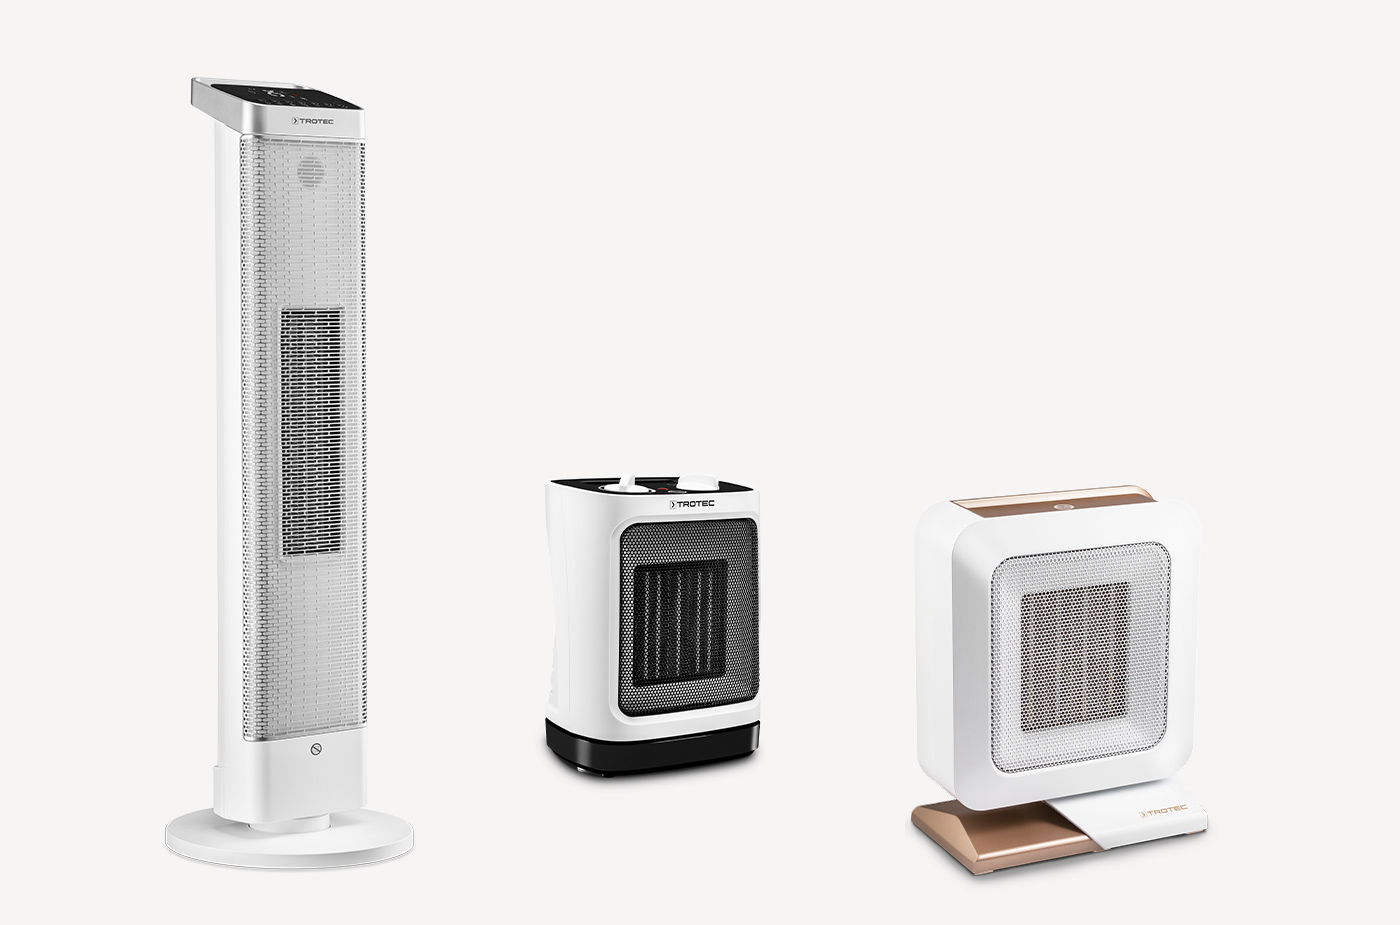 Calefactores eléctricos de bajo consumo: ¿Cuál elegir? » Ocio